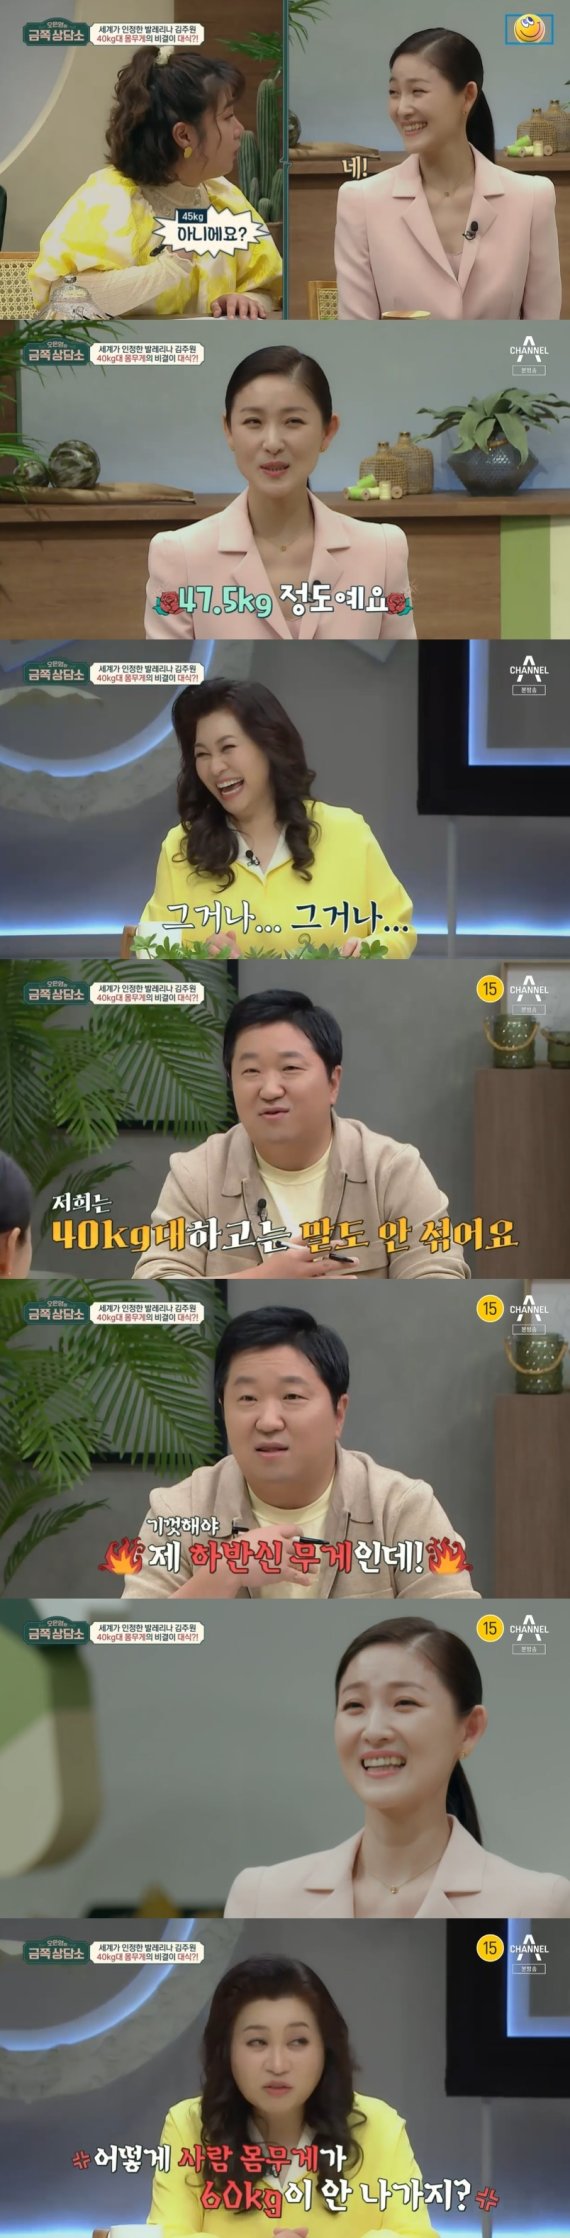 Dr. Eun Young Oh, para a bailarina Joo Won Kim "Como não pesar 60 kg?" Por favor